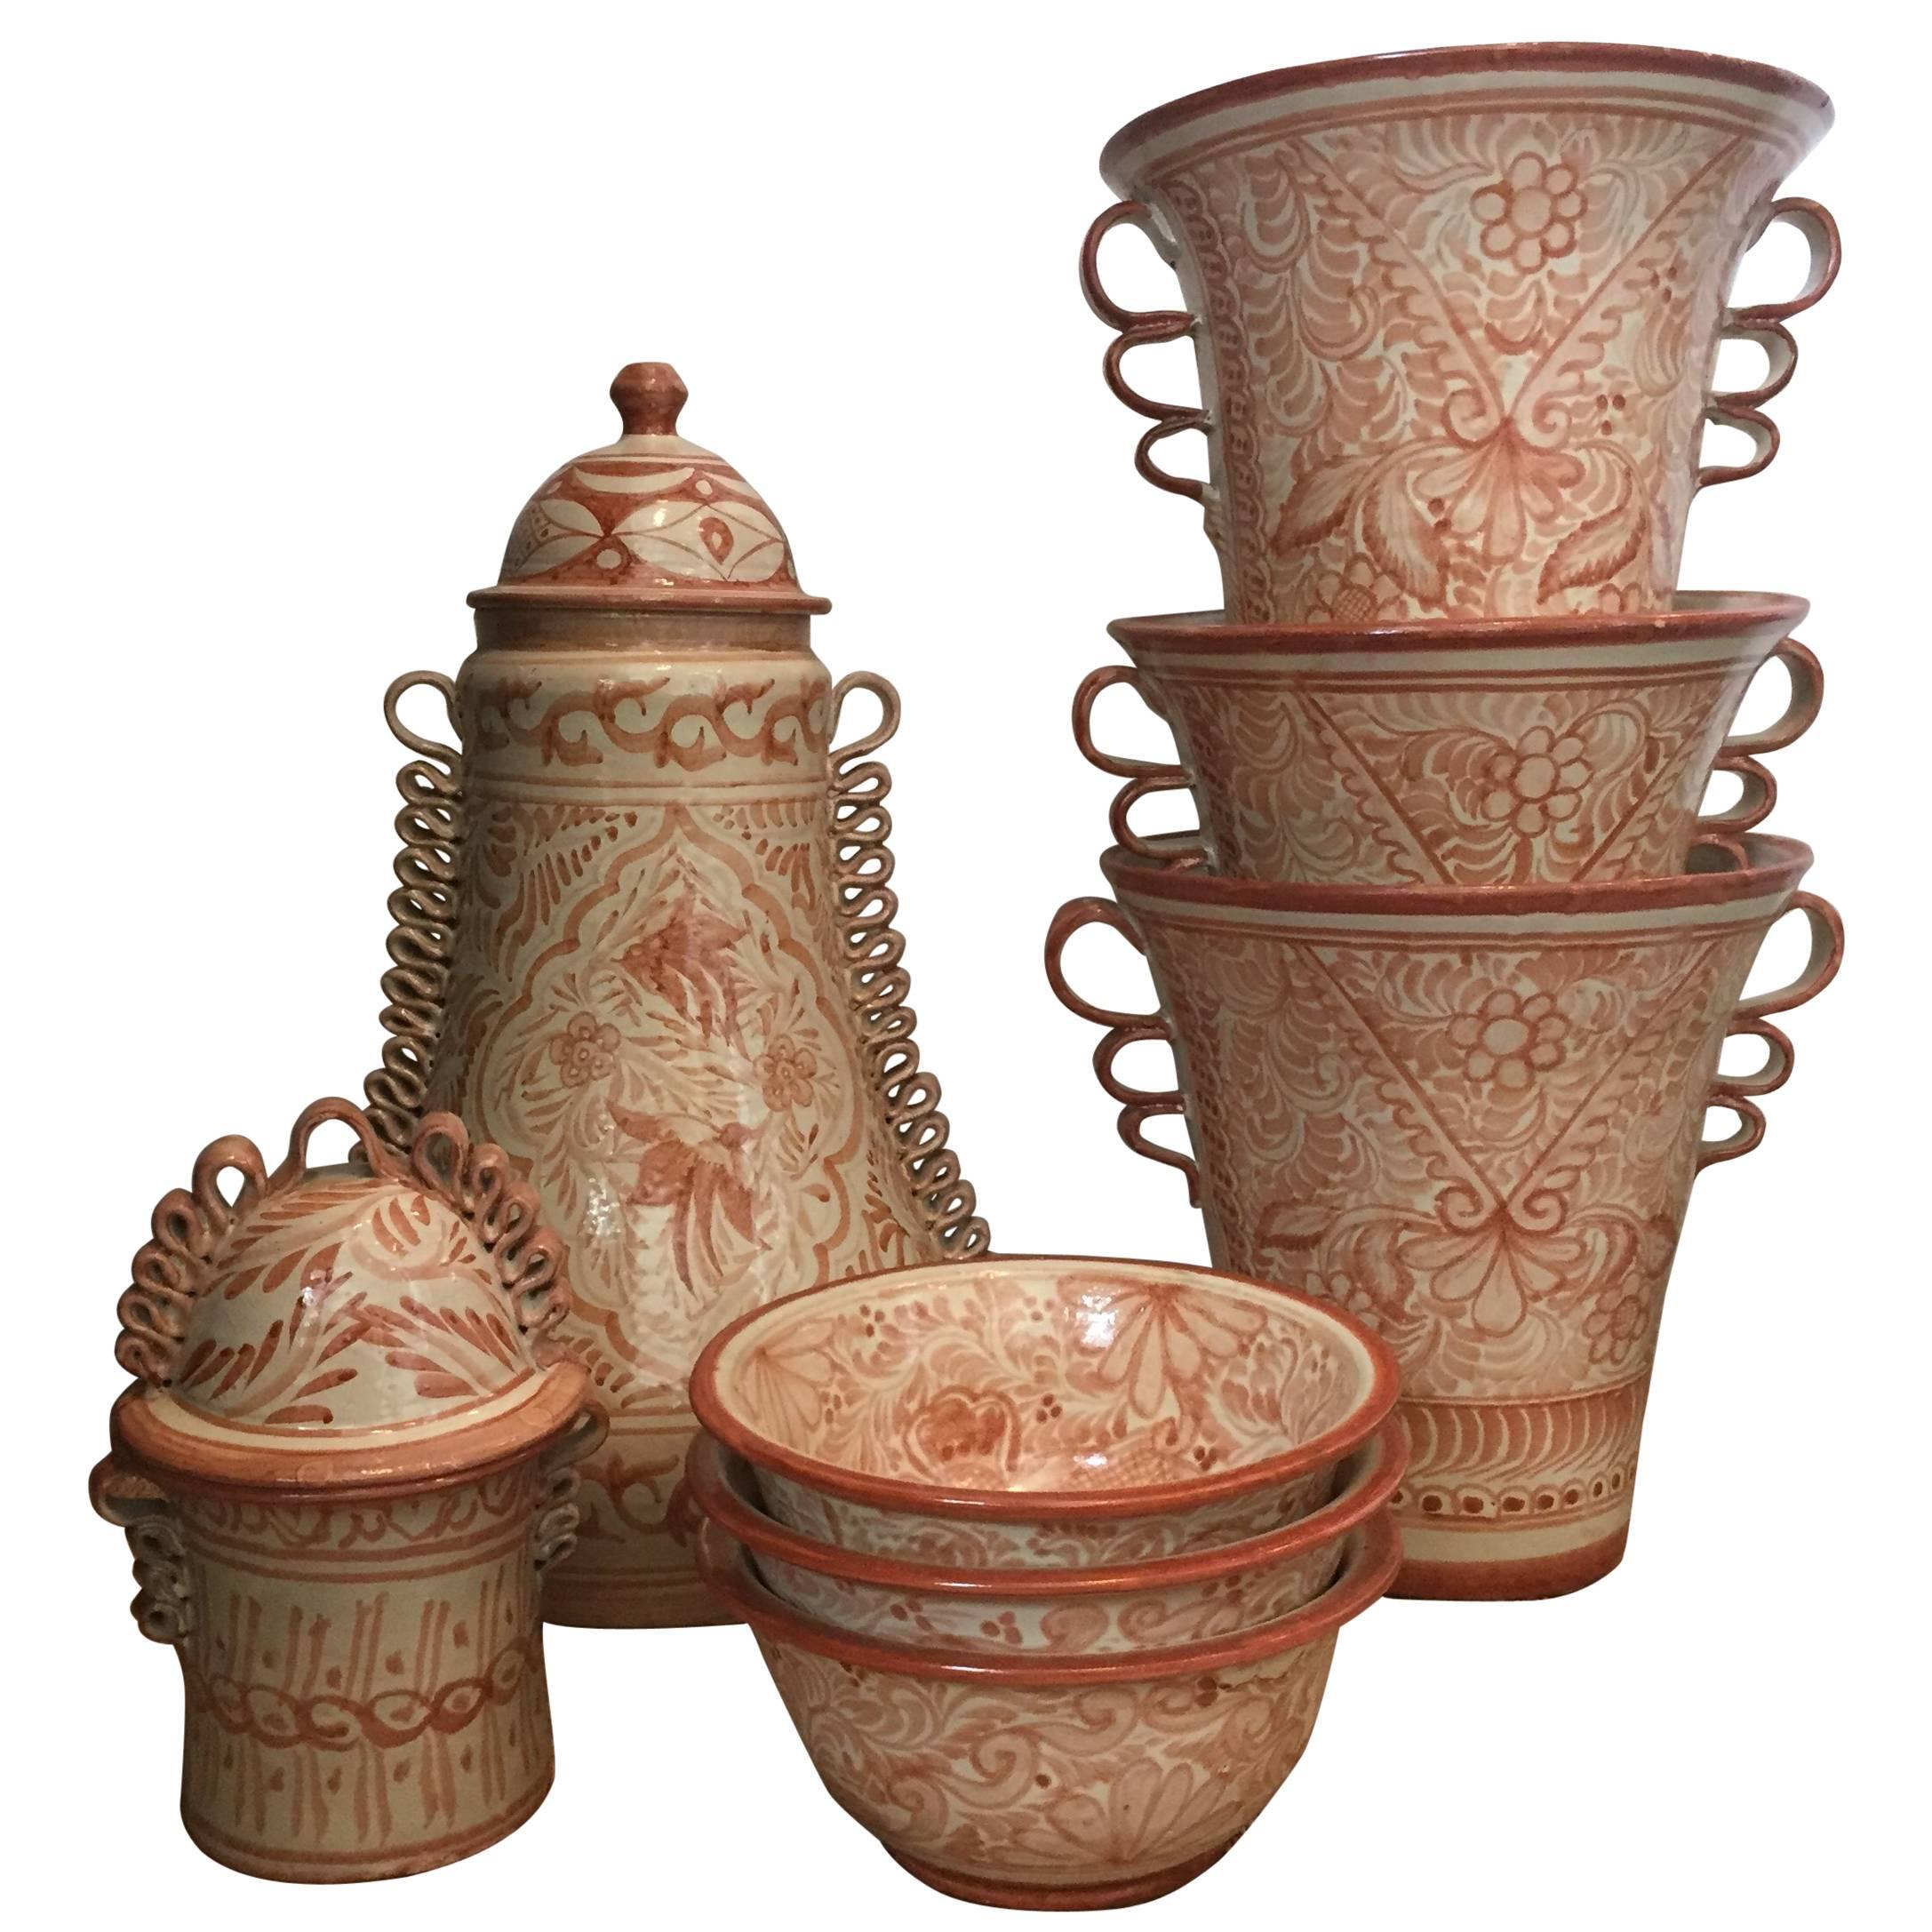 Spanish Ceramic Talavera Mexican Pottery Pot In Fair Condition For Sale In Dallas, TX